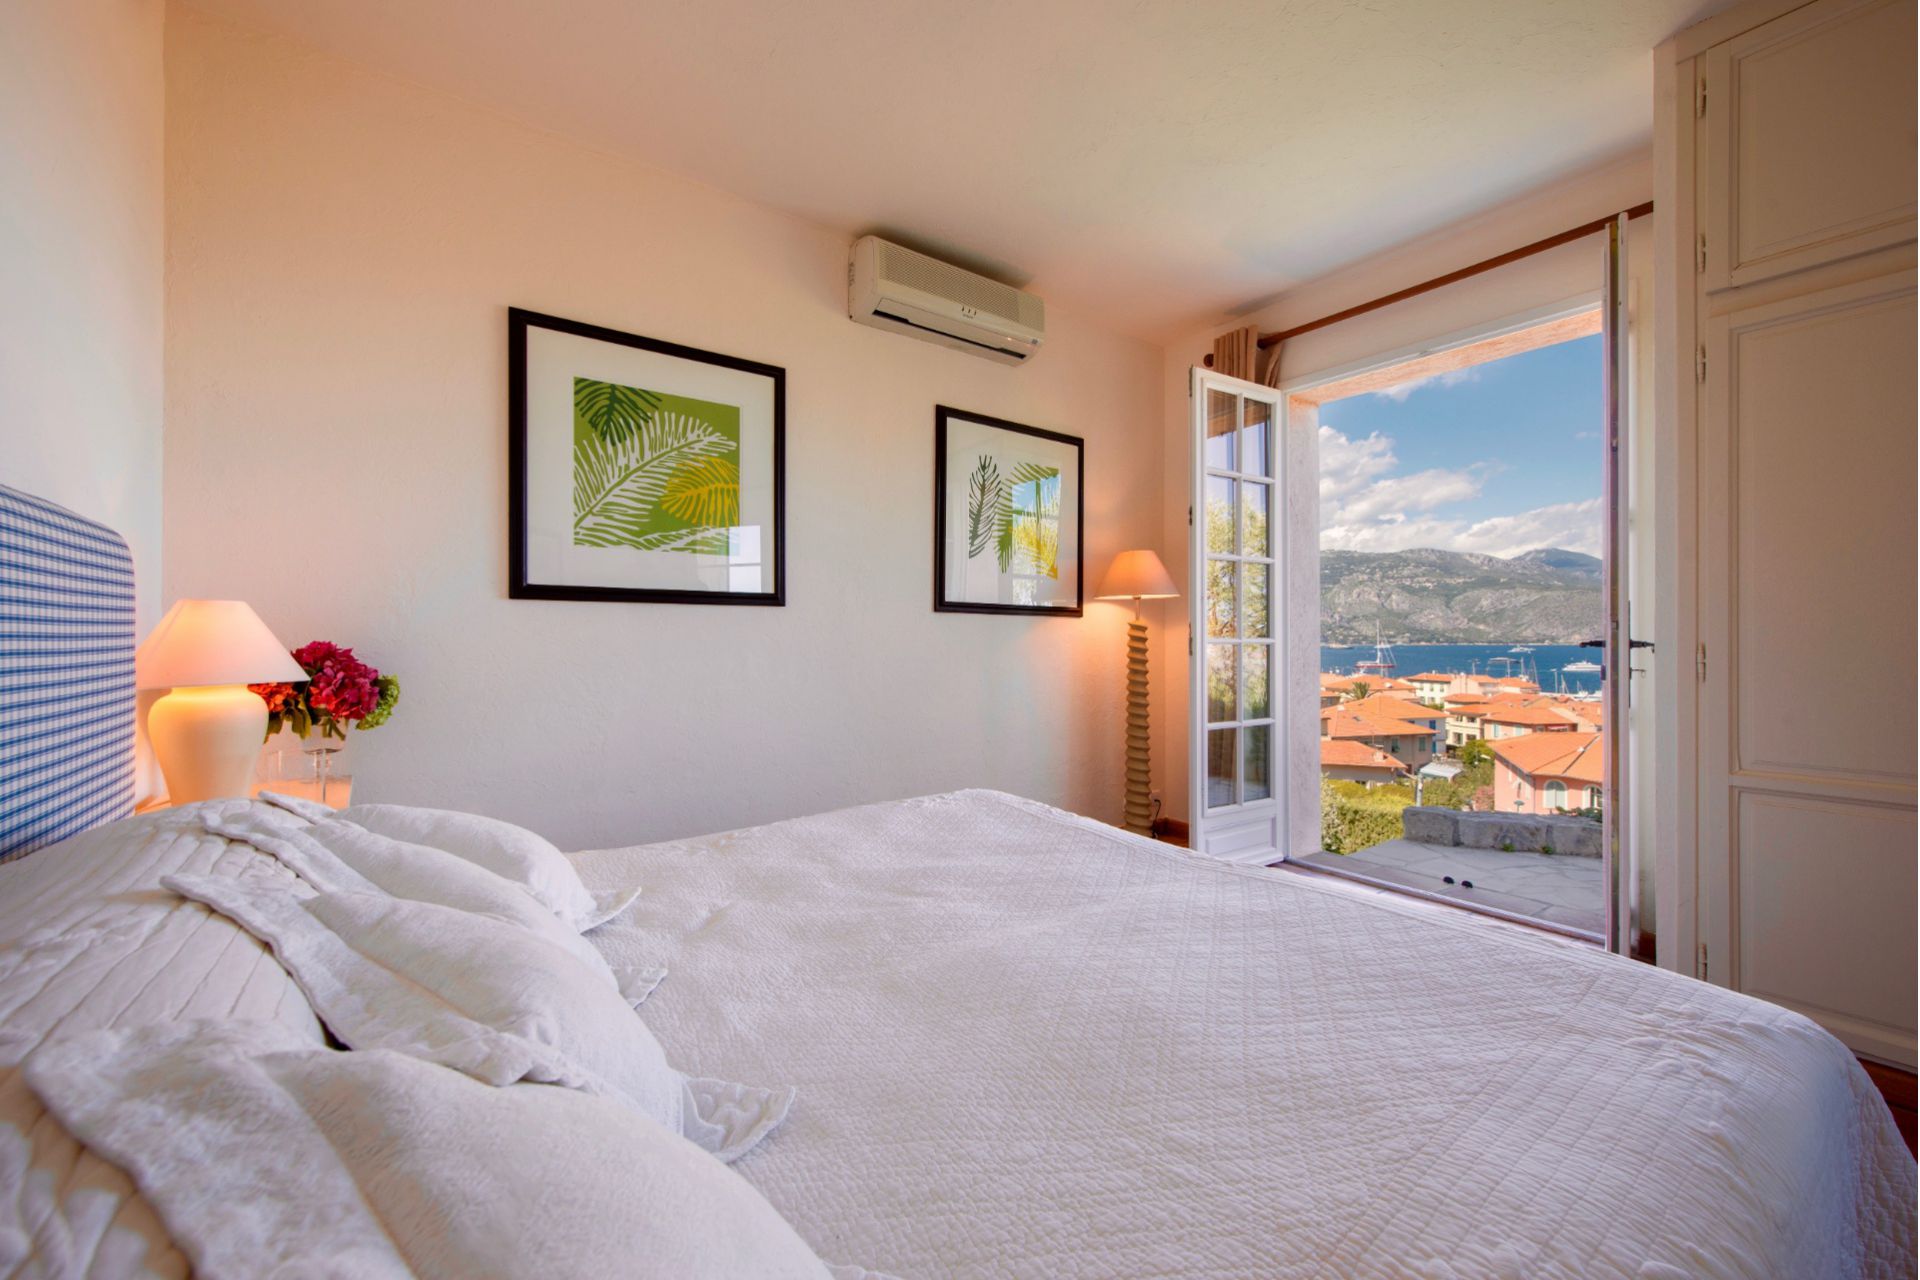 Méditerranée Location Villa avec Piscine privée à St-Jean-Cap-Ferrat, Côte d'Azur